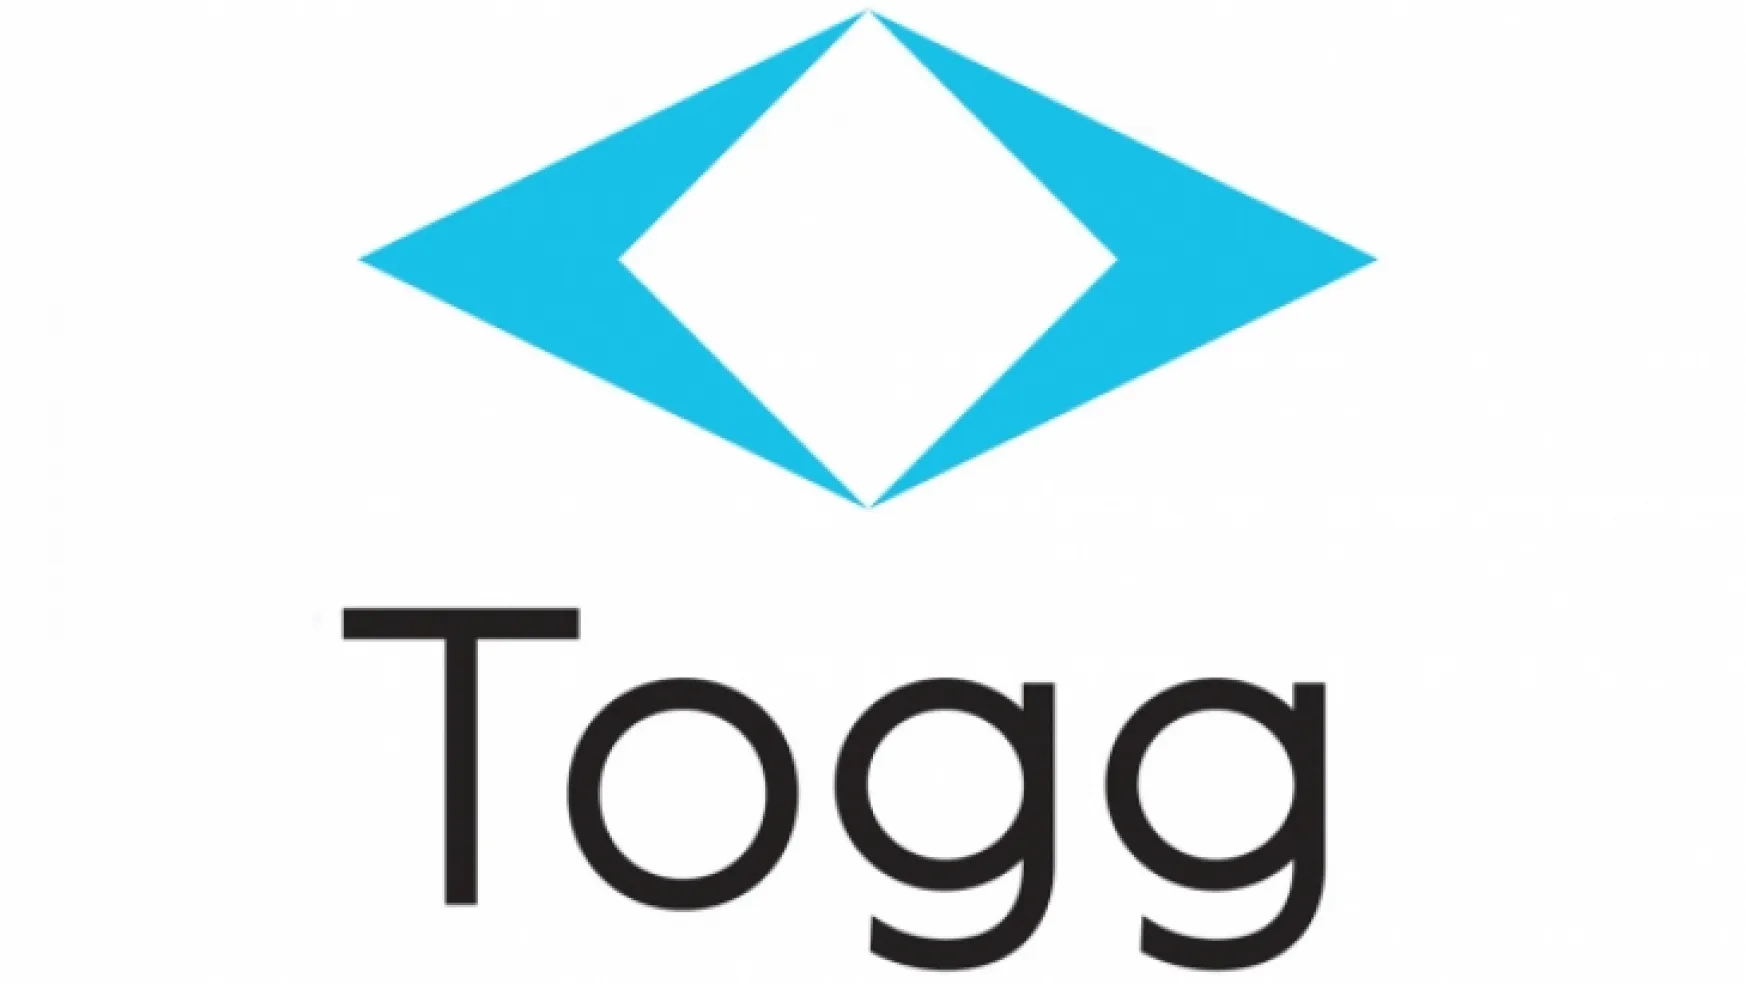 Yerli otomobil TOGG'un logosu belli oldu